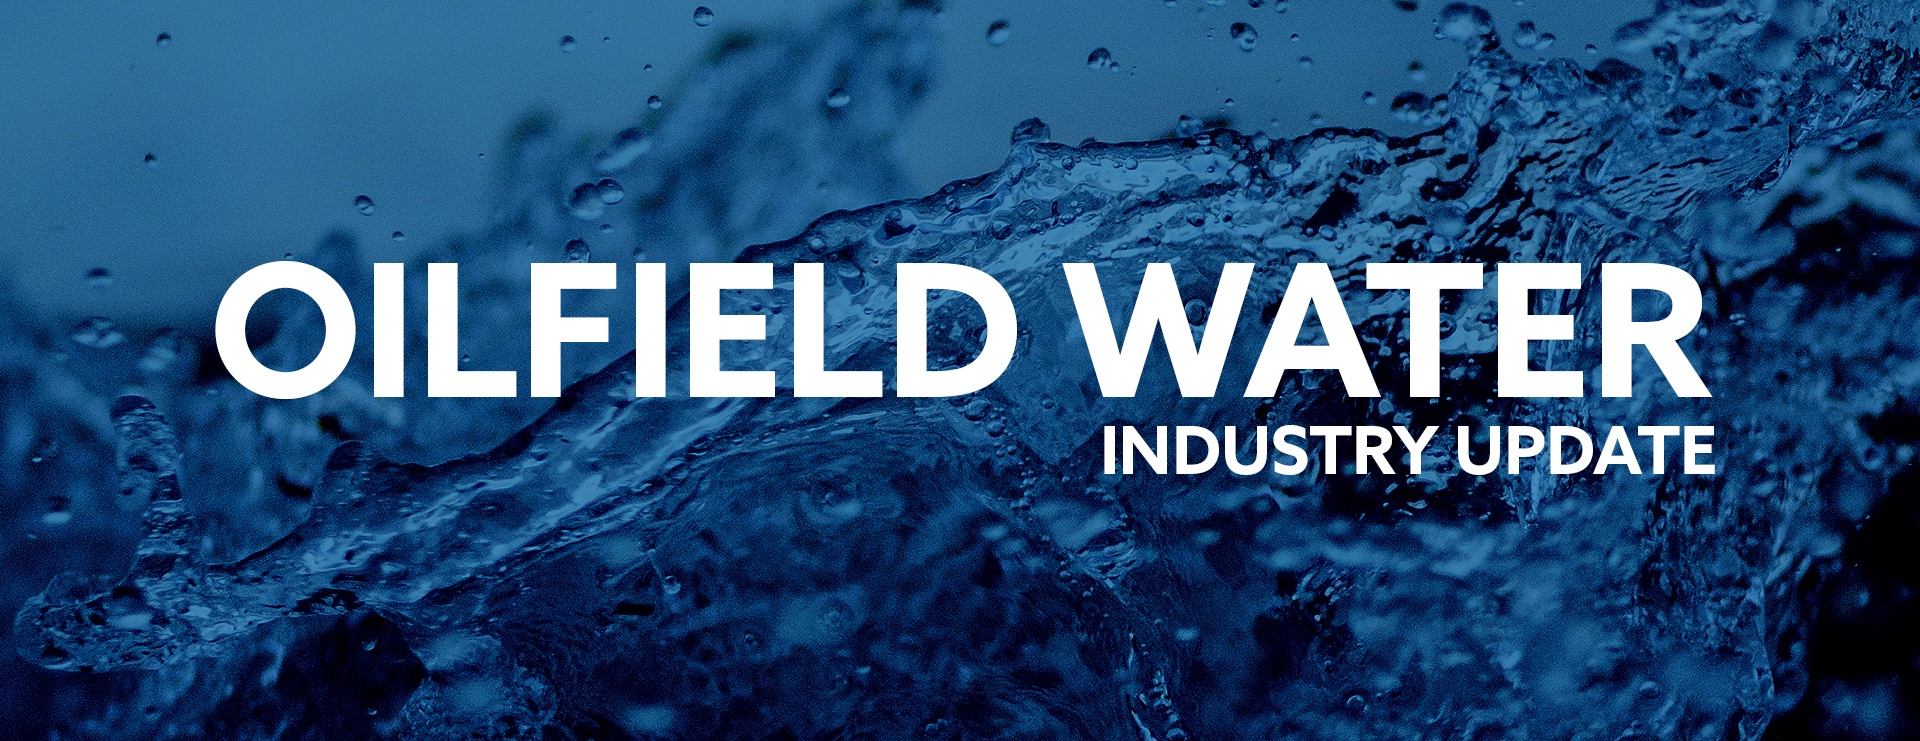 Oilfield Water Industry Update